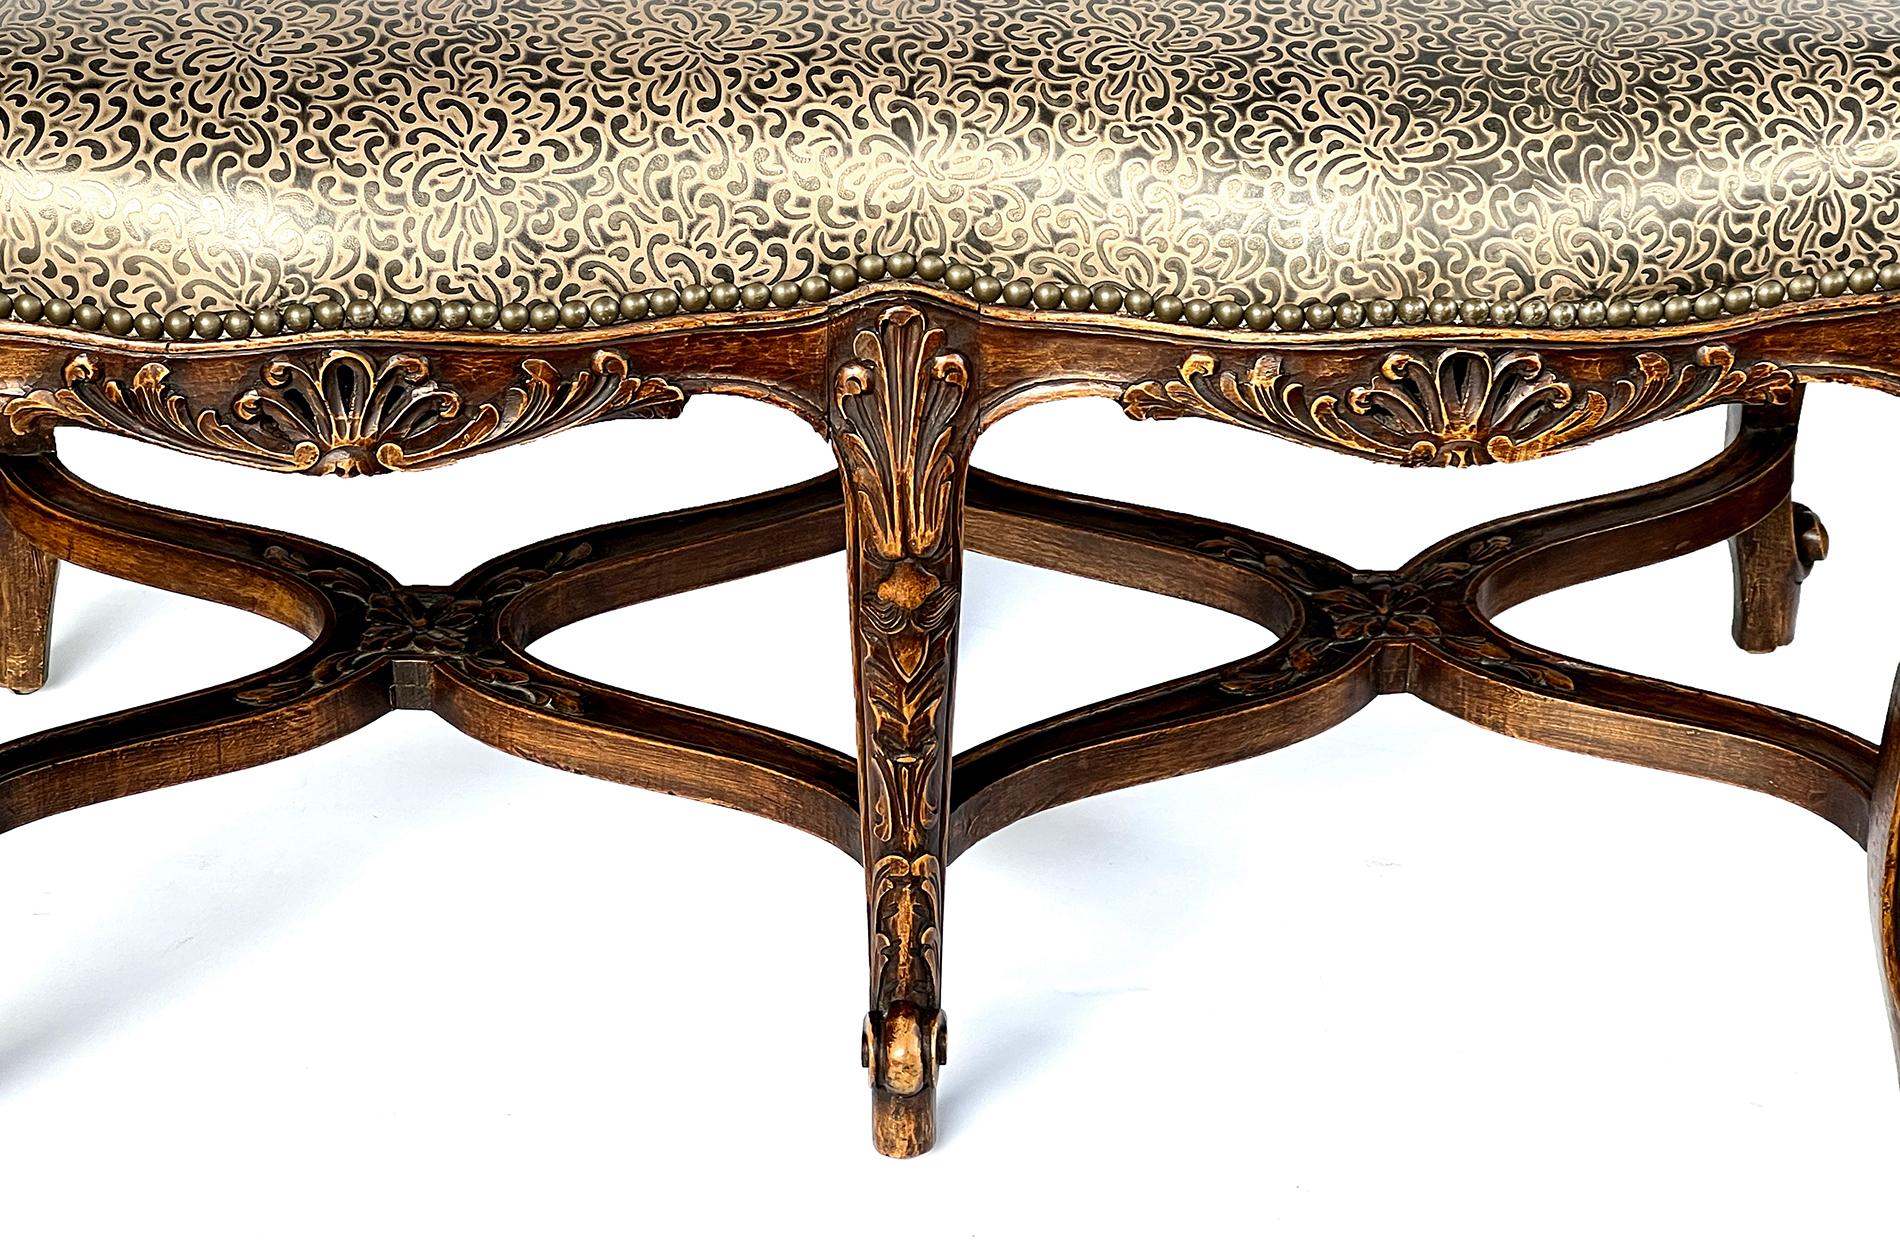 le siège en cuir formé au-dessus d'un cadre conforme orné de motifs sculptés de Rocaille et de feuillage, le tout reposant sur des supports en cabriole reliés par une entretoise ondulante